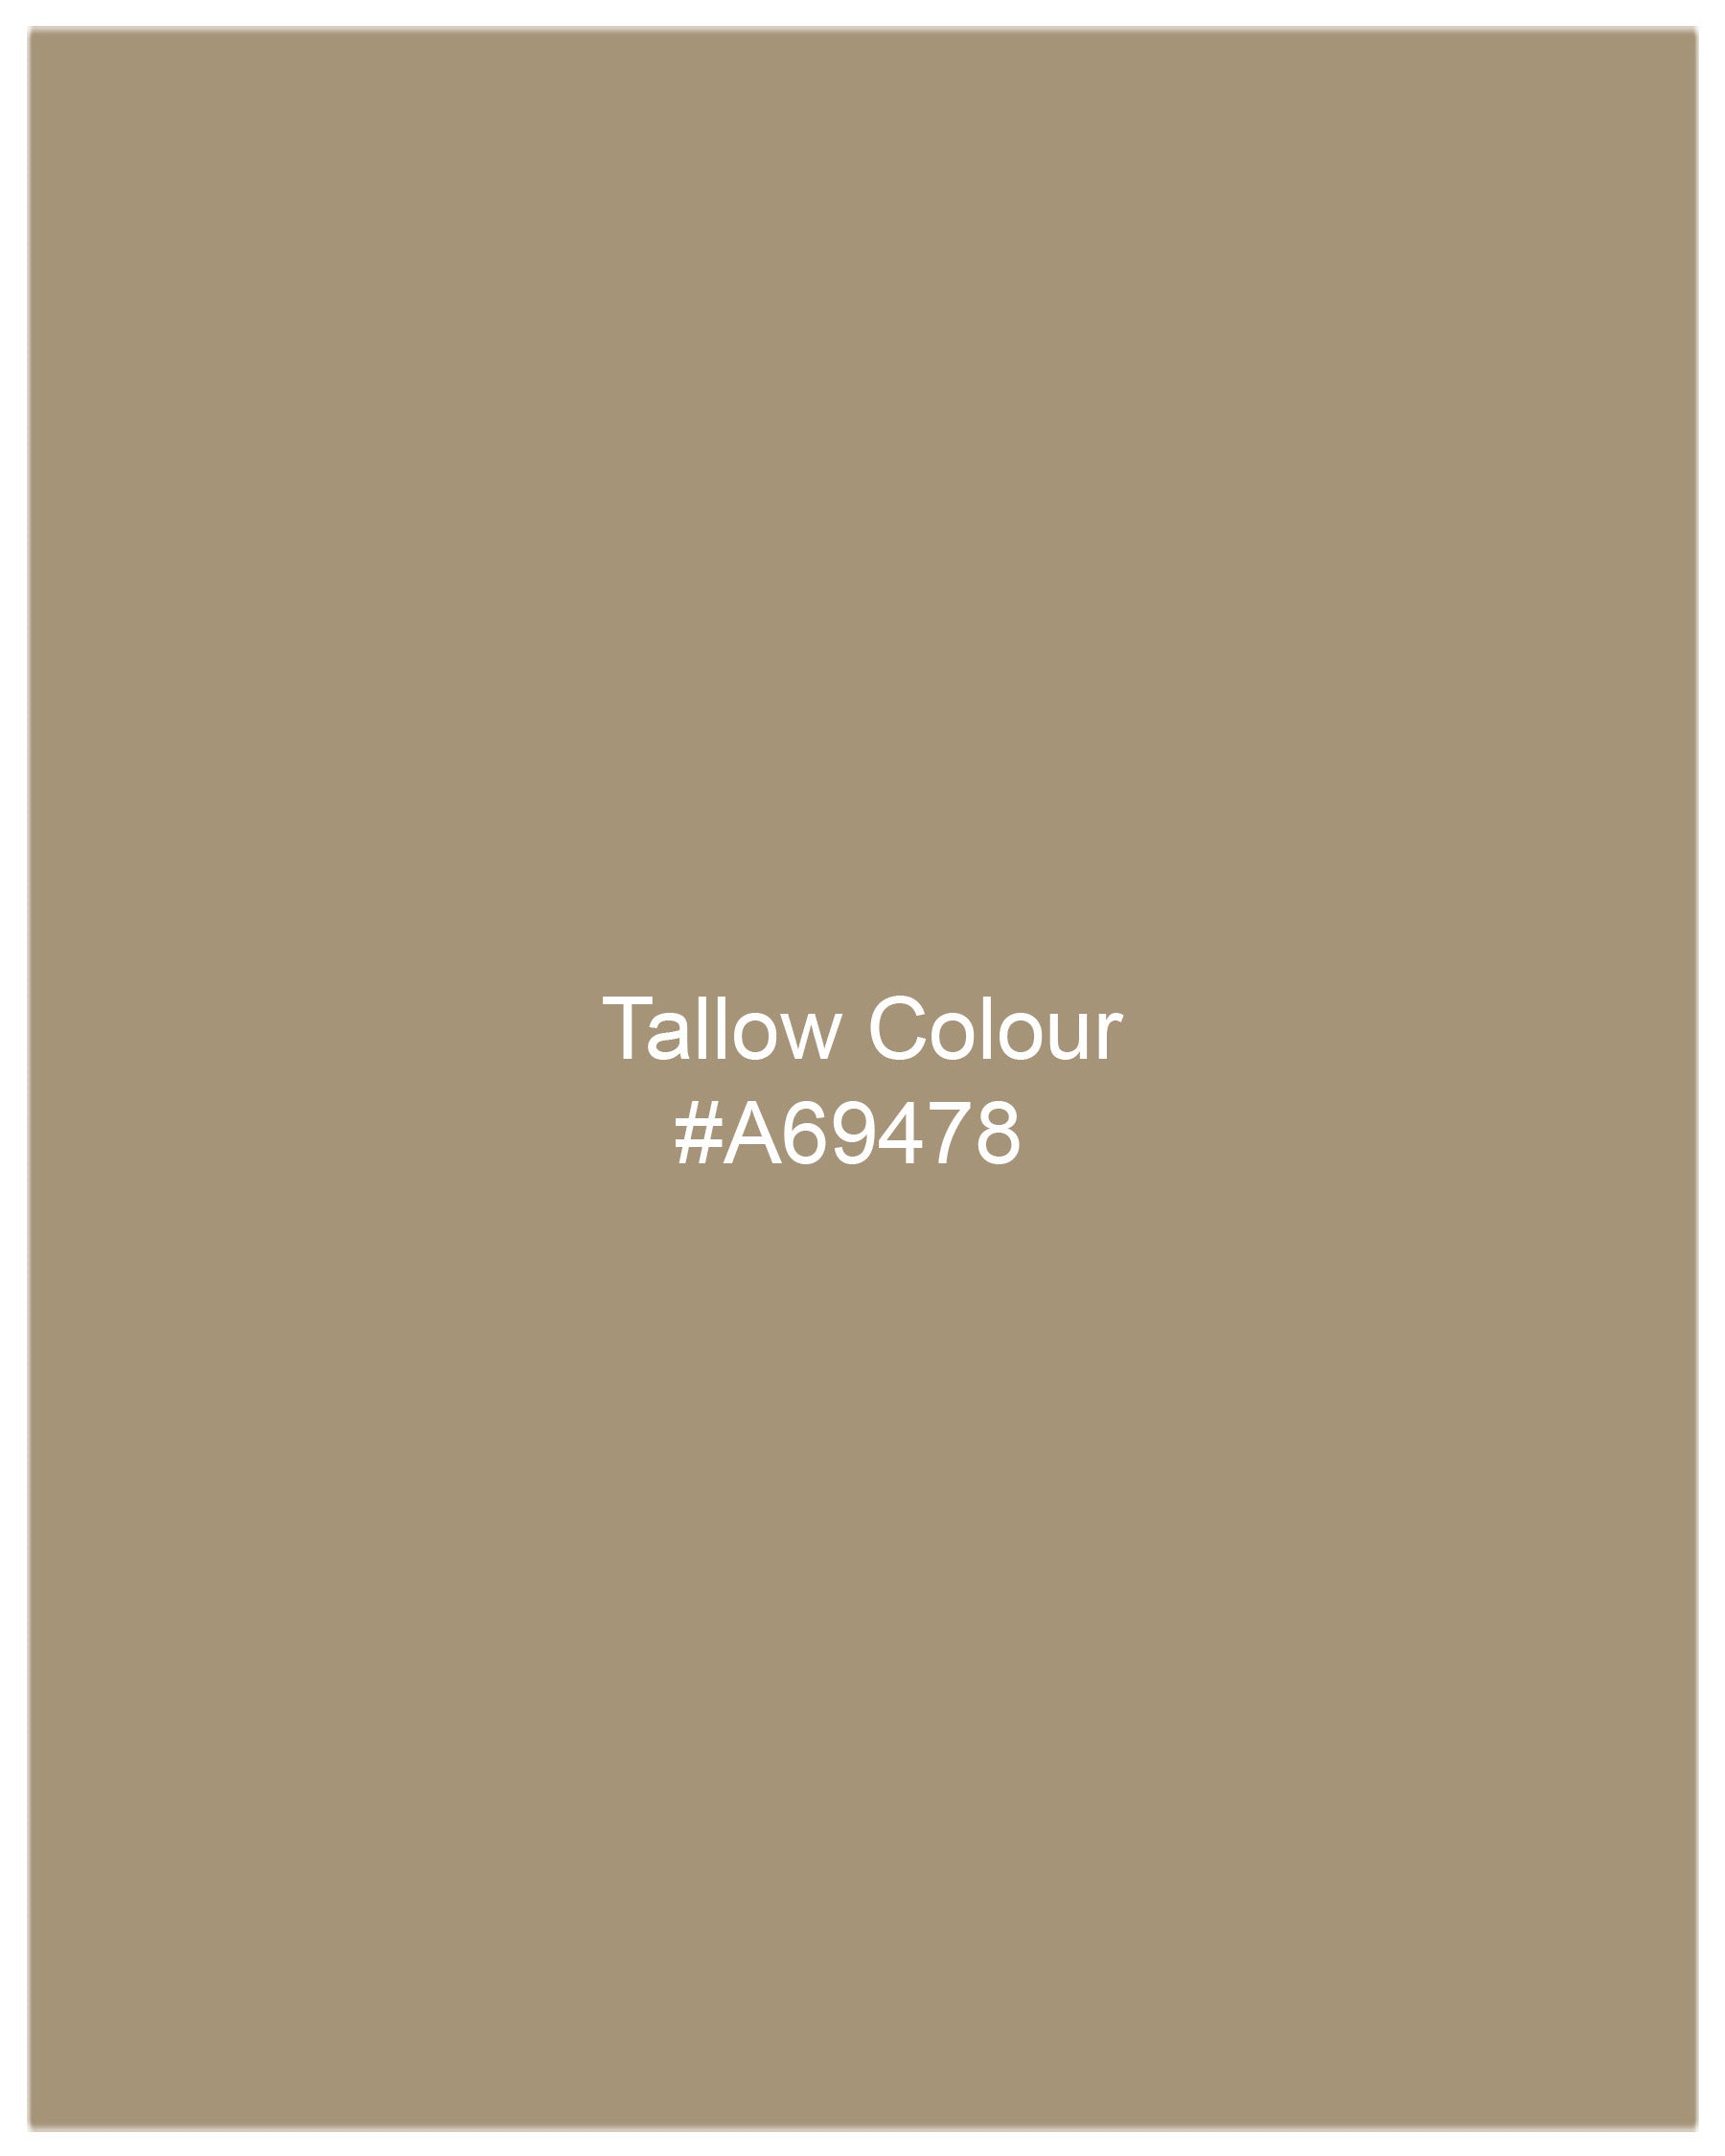 Tallow Brown Textured Waistcoat V2026-36, V2026-38, V2026-40, V2026-42, V2026-44, V2026-46, V2026-48, V2026-50, V2026-52, V2026-54, V2026-56, V2026-58, V2026-60